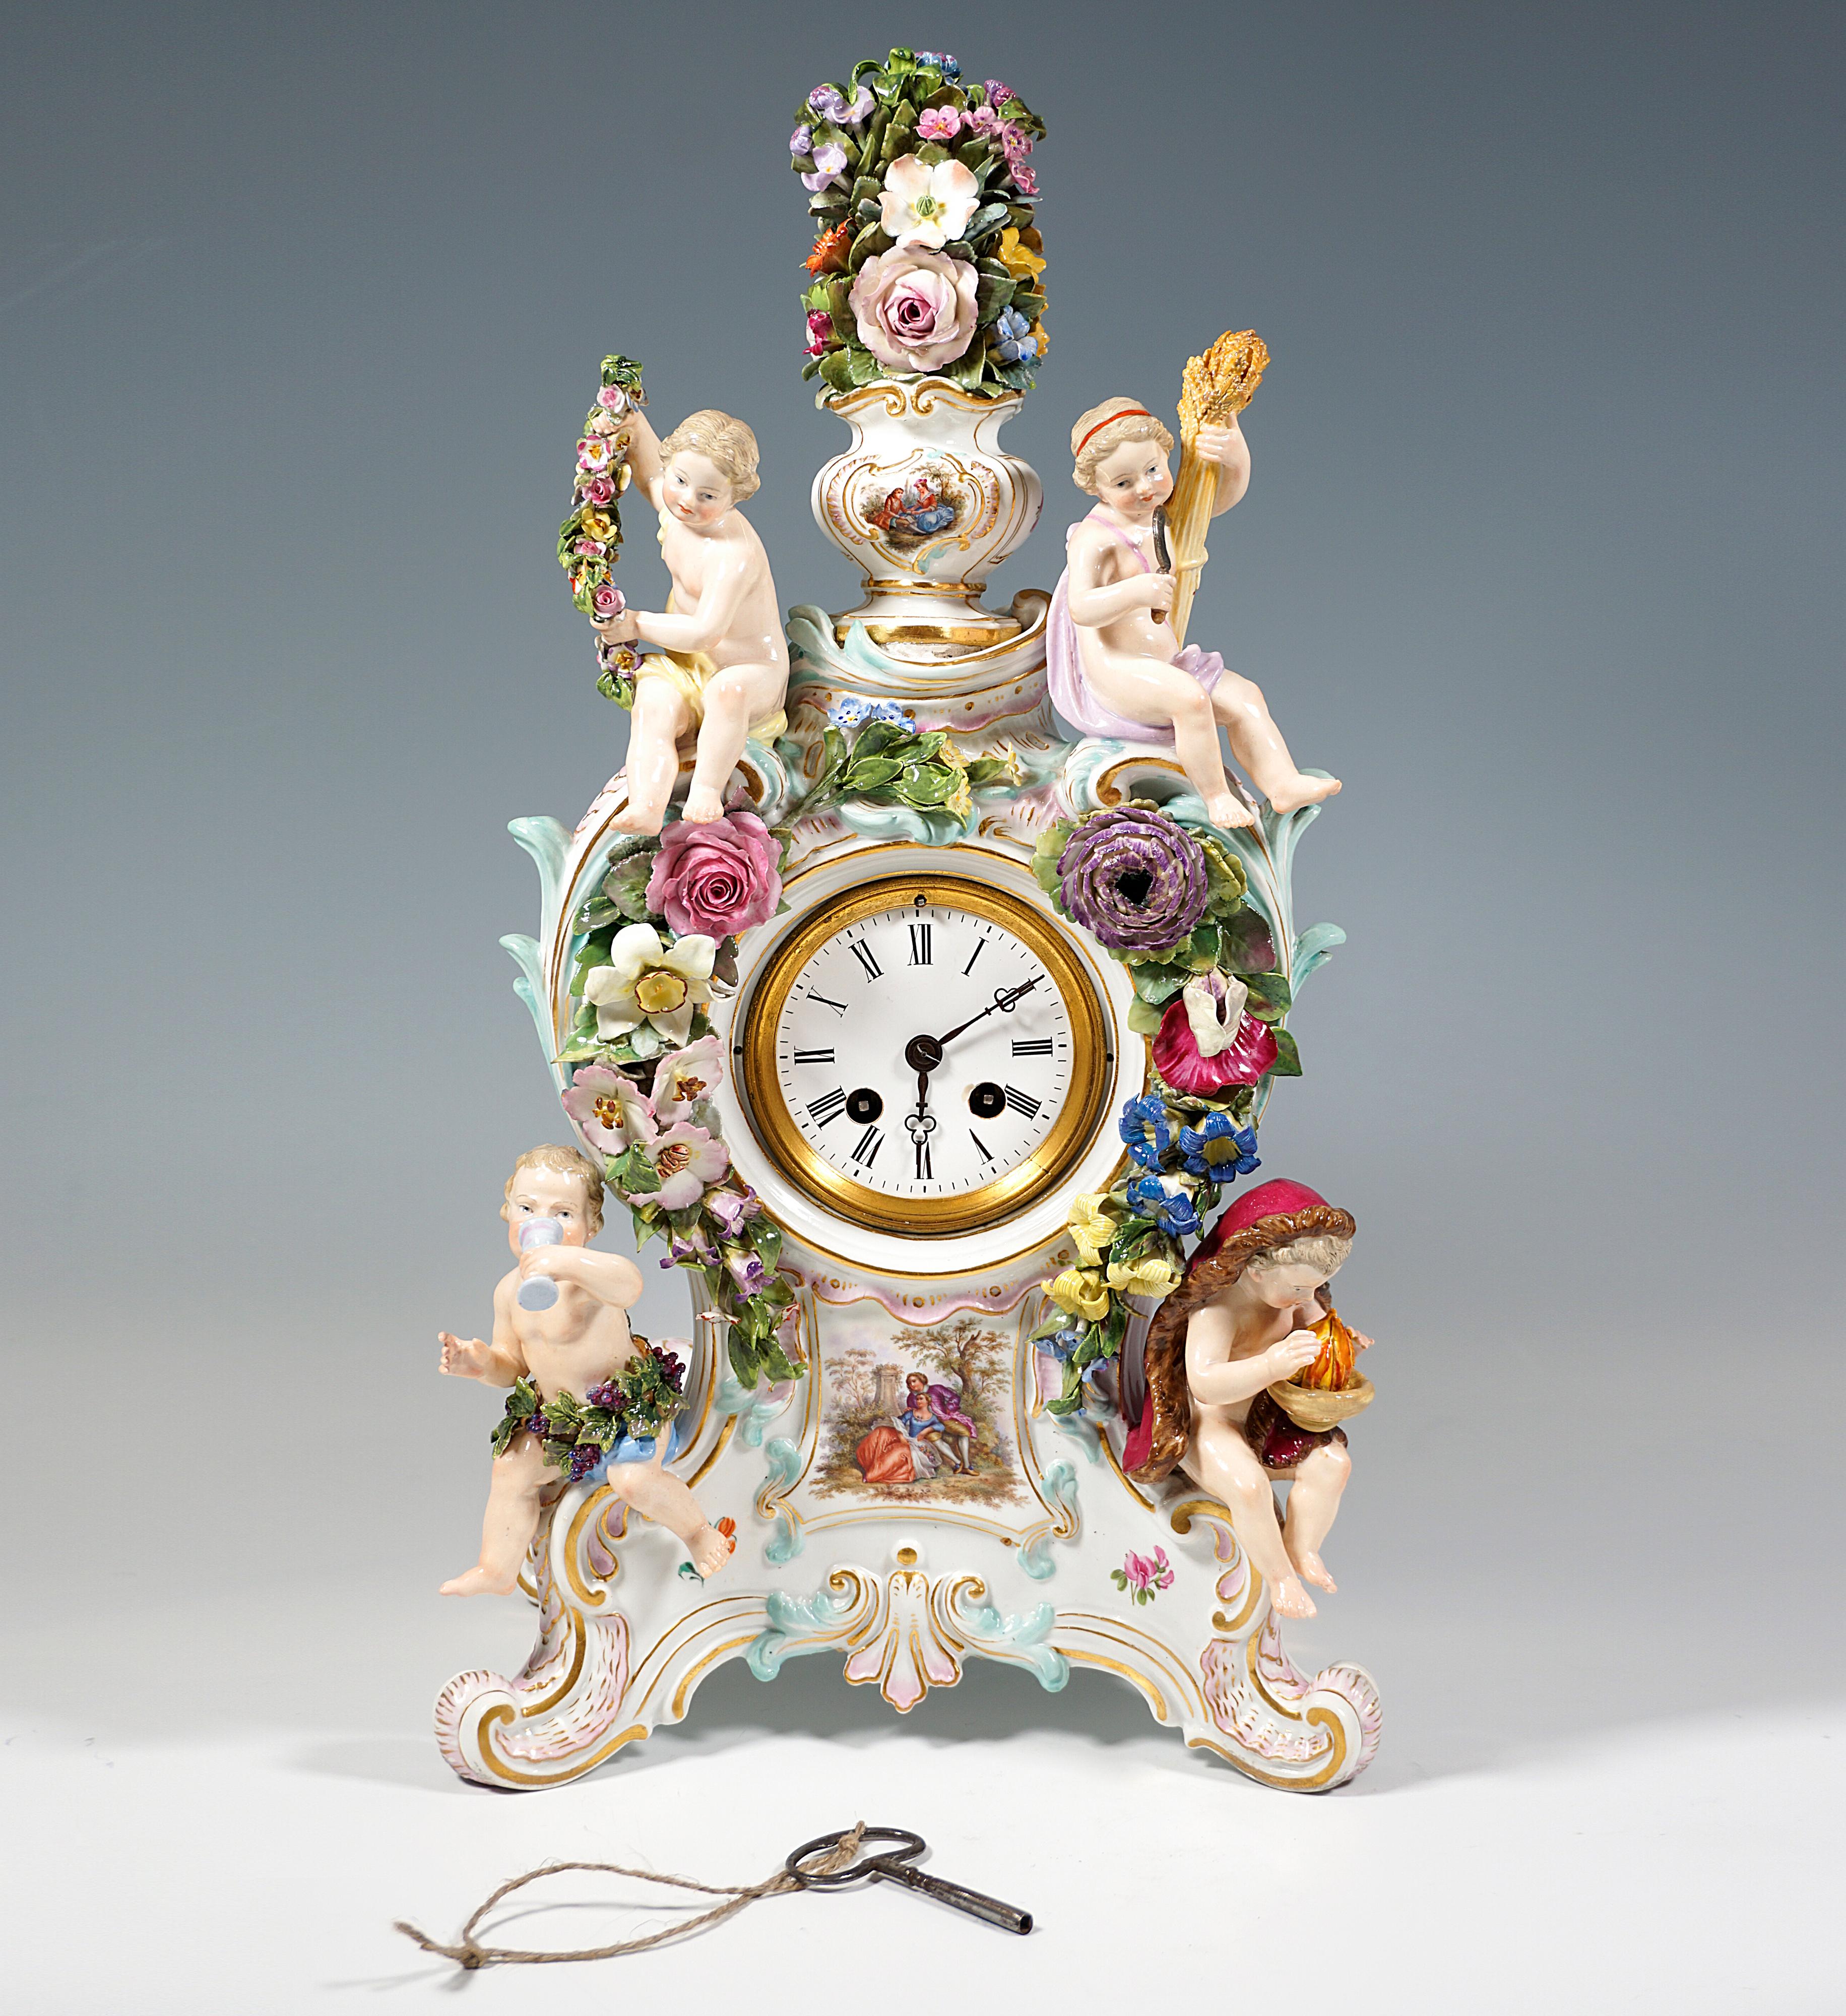 Le boîtier de l'horloge a été conçu par Ernst August Leuteritz à partir de moules anciens de style rococo : Le boîtier de l'horloge s'élève sur une base avec des rocailles rehaussées d'or, richement décorée de fleurs, de feuilles et de rocailles